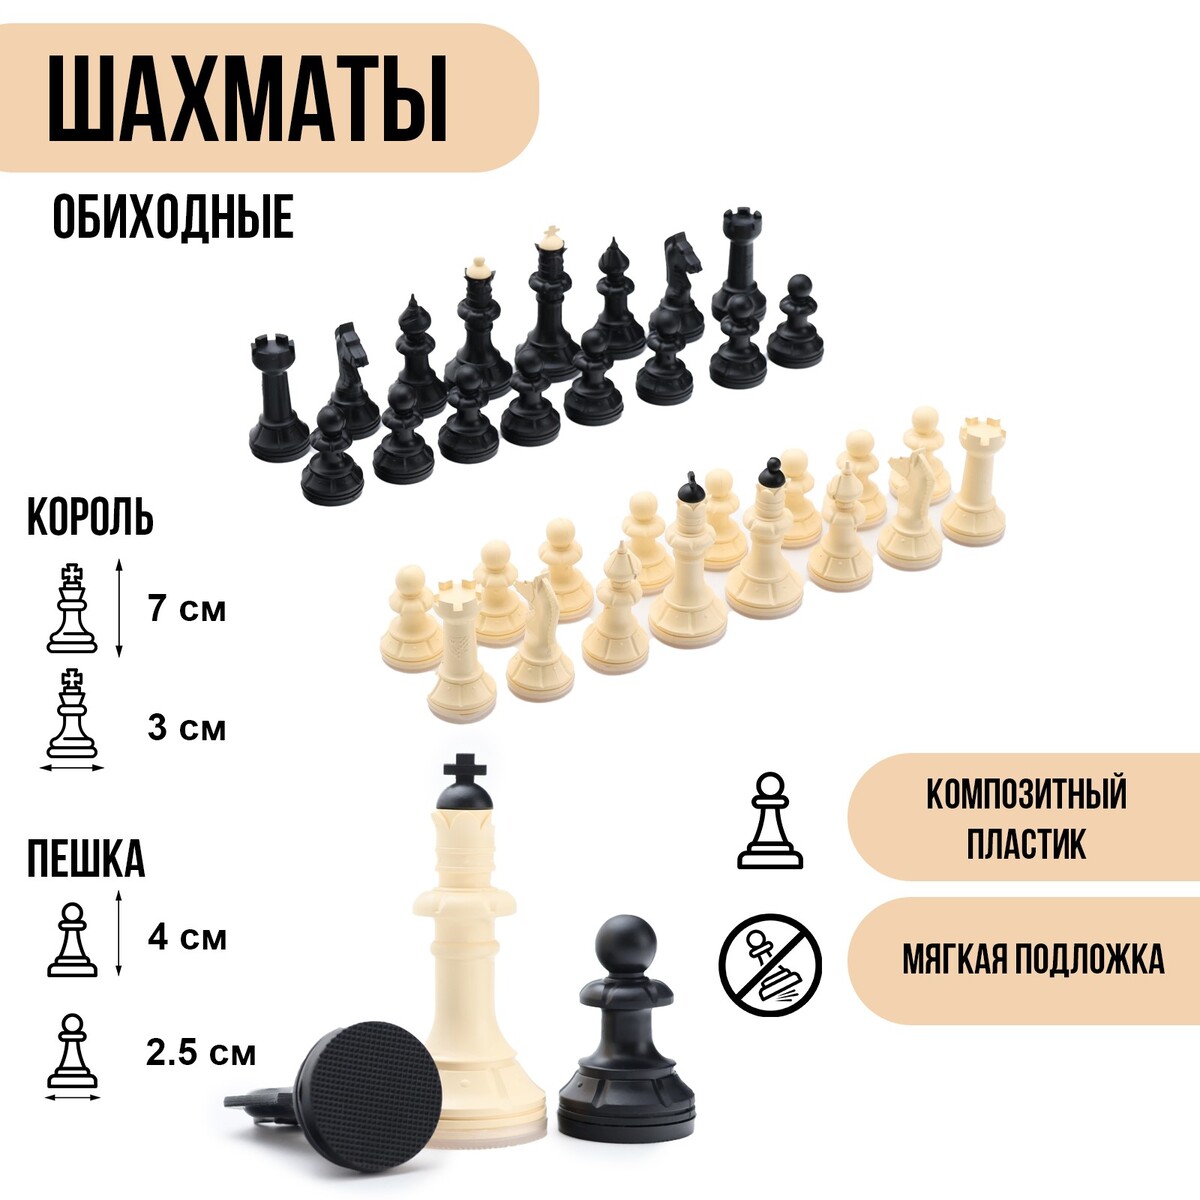 Шахматные фигуры обиходные, король h=7 см, пешка-4 см, пластик король лебедь